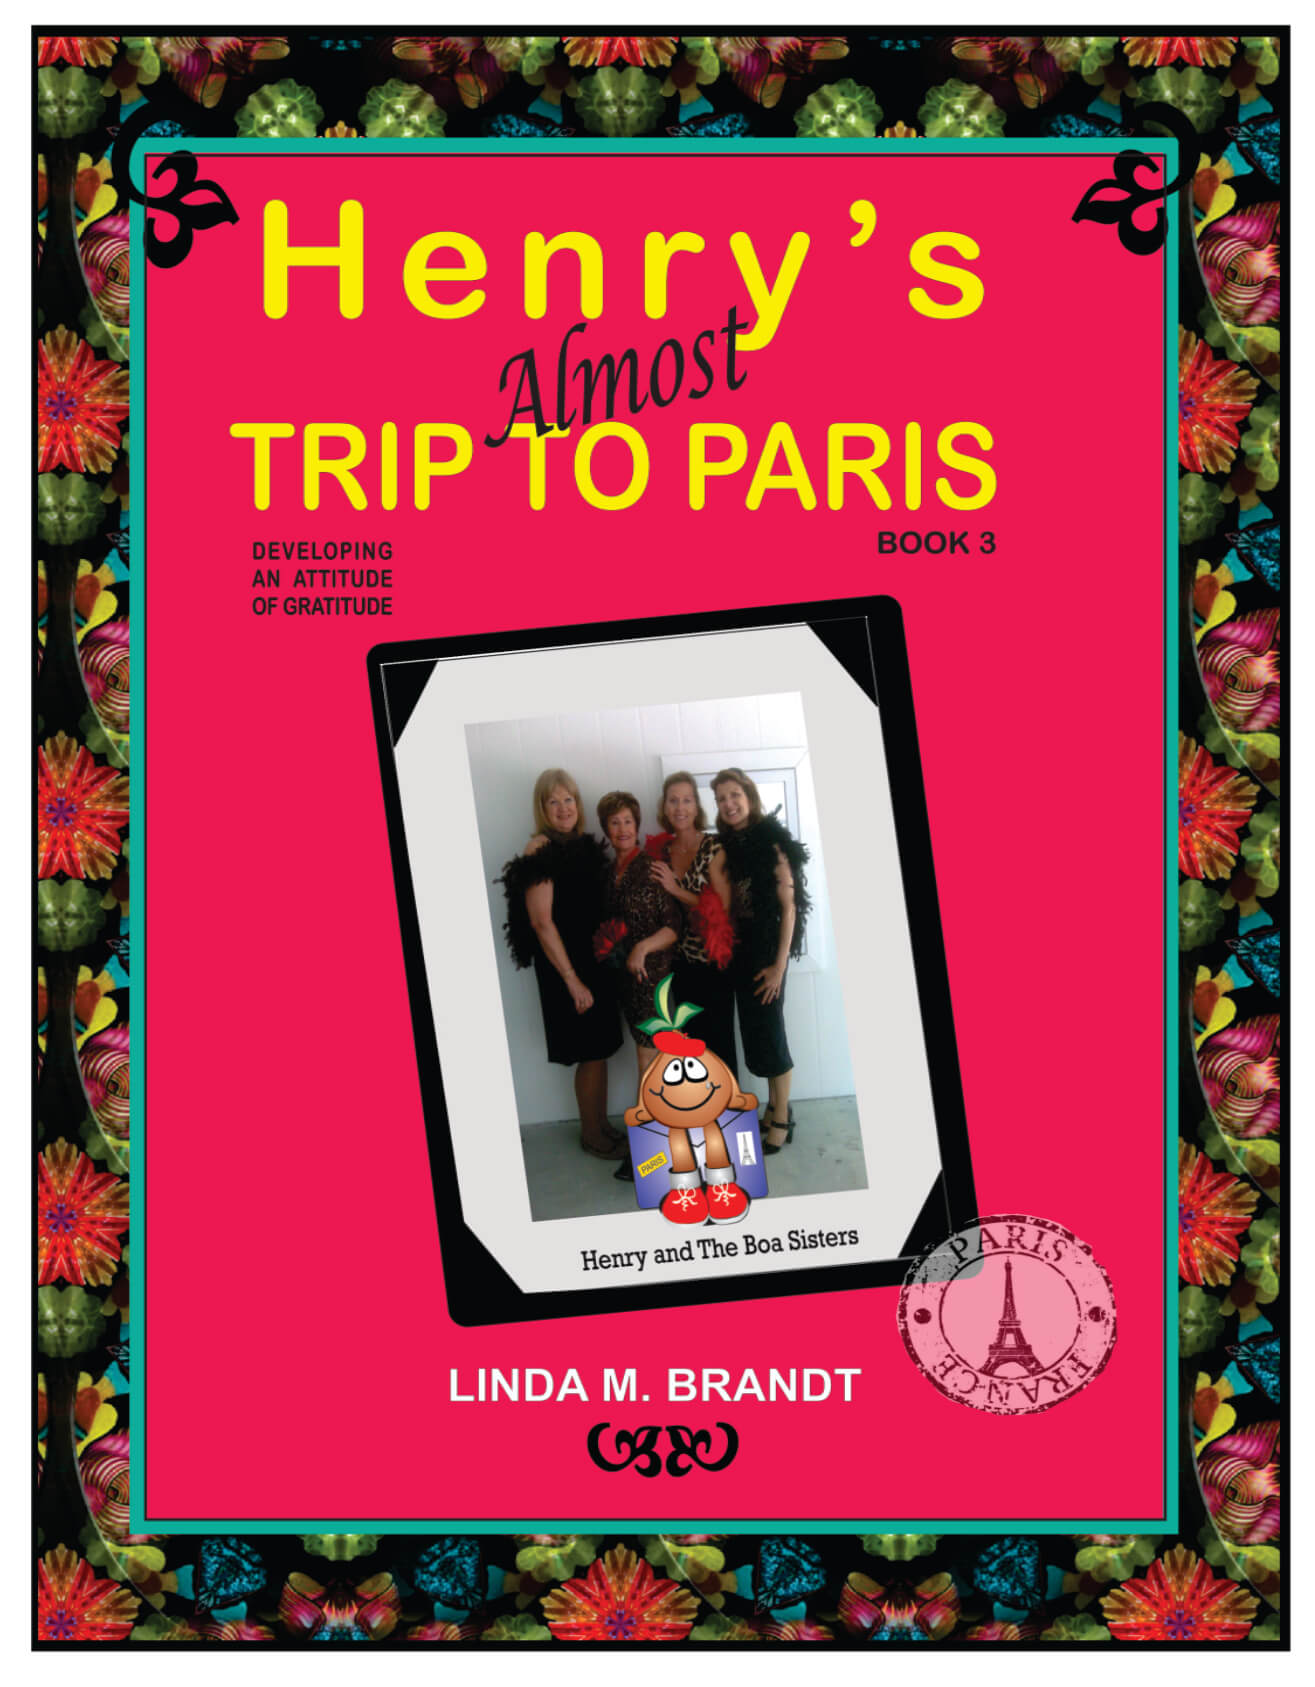 HENRY PARIS POSTCARD front